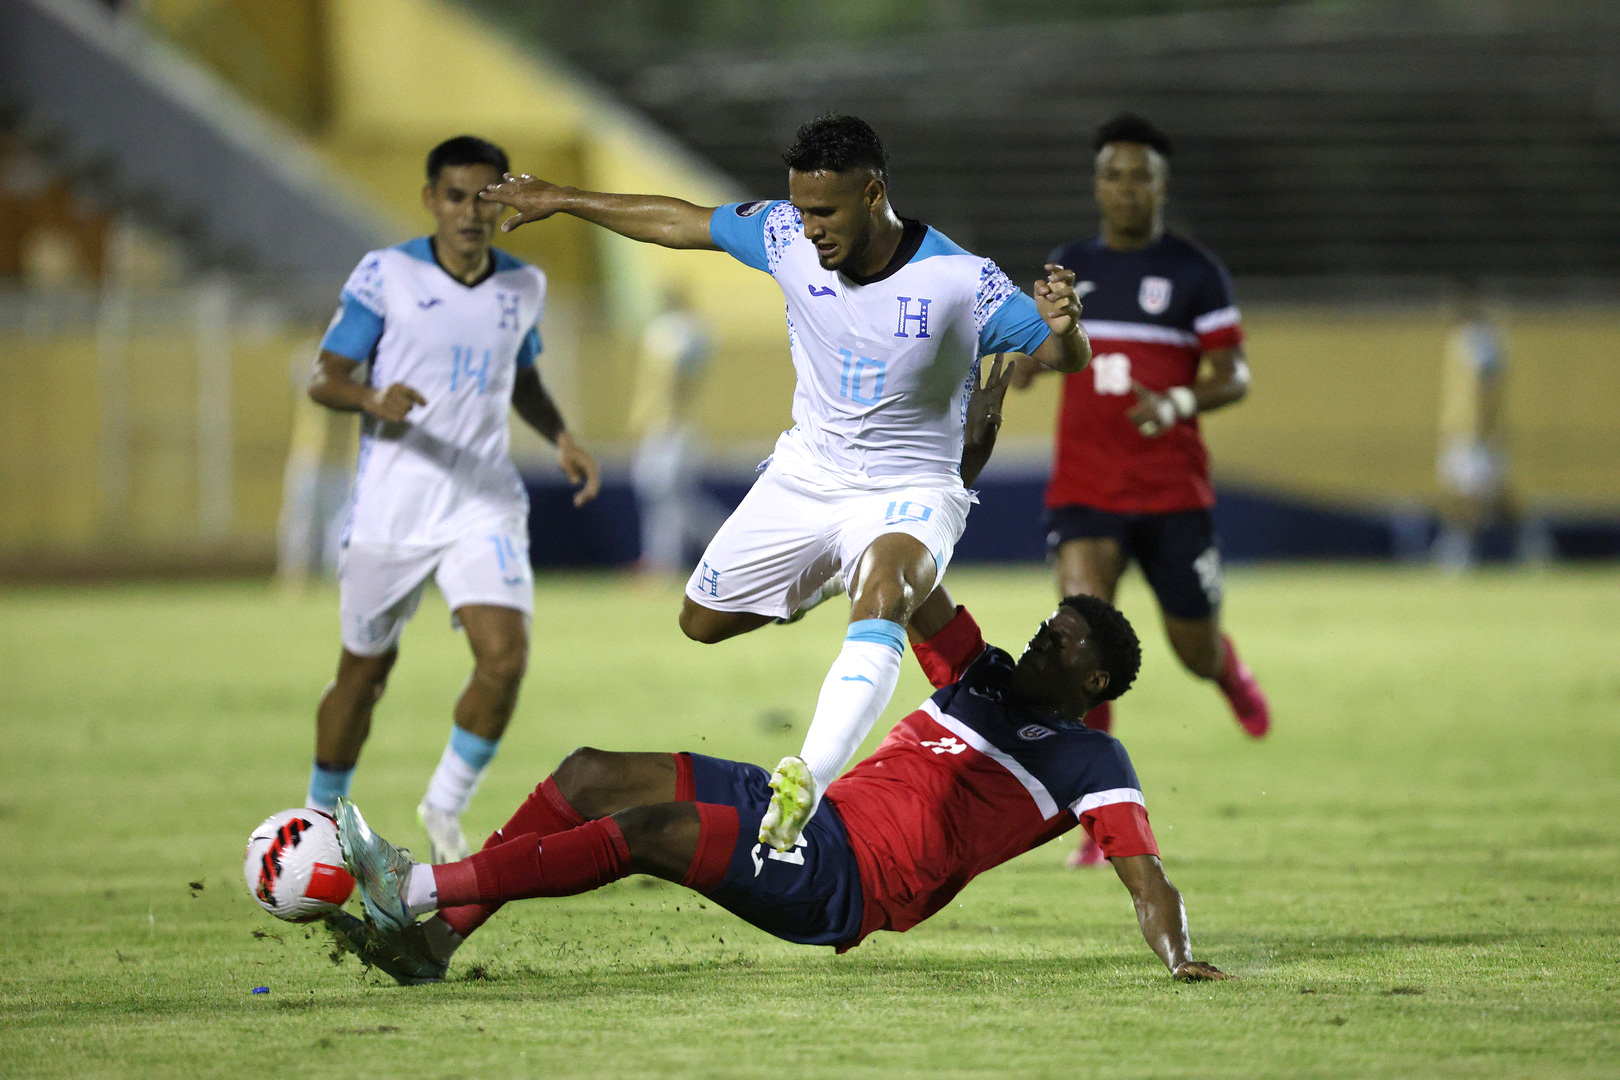 Barbados vs Cuba (24/03/2023) CONCACAF Nations League PES 2021 